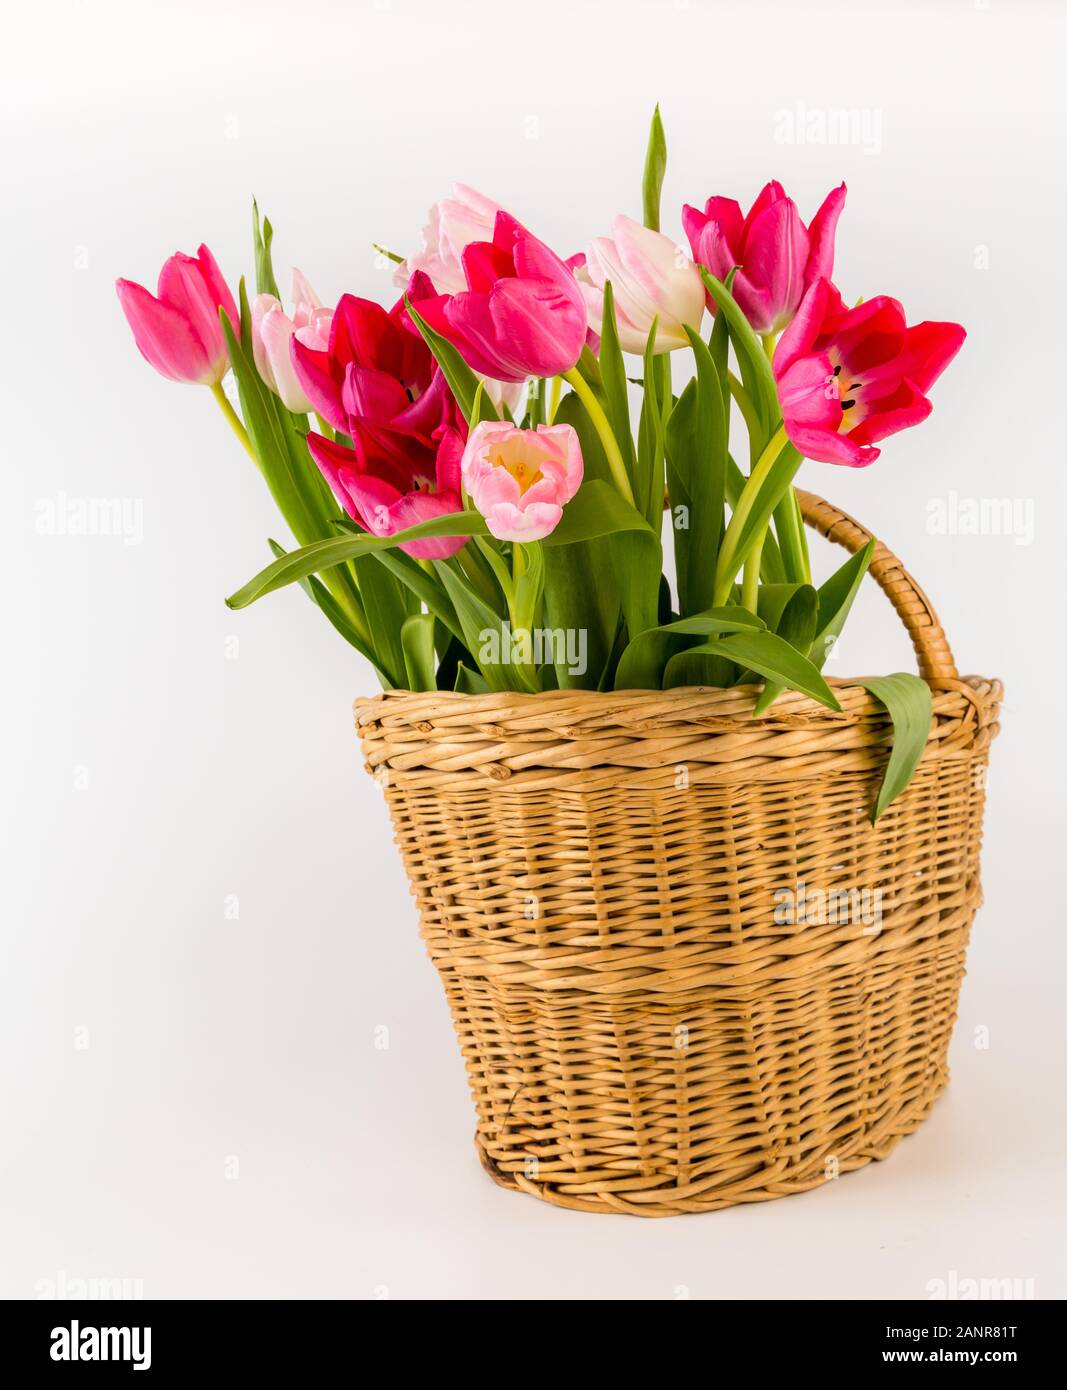 Strauß mit frischen Frühling Tulpen in einem Weidenkorb, auf weißem Hintergrund. Herzliche Gratulation. Valentinstag, Frühling, Ostern. Platz für Text. Stockfoto